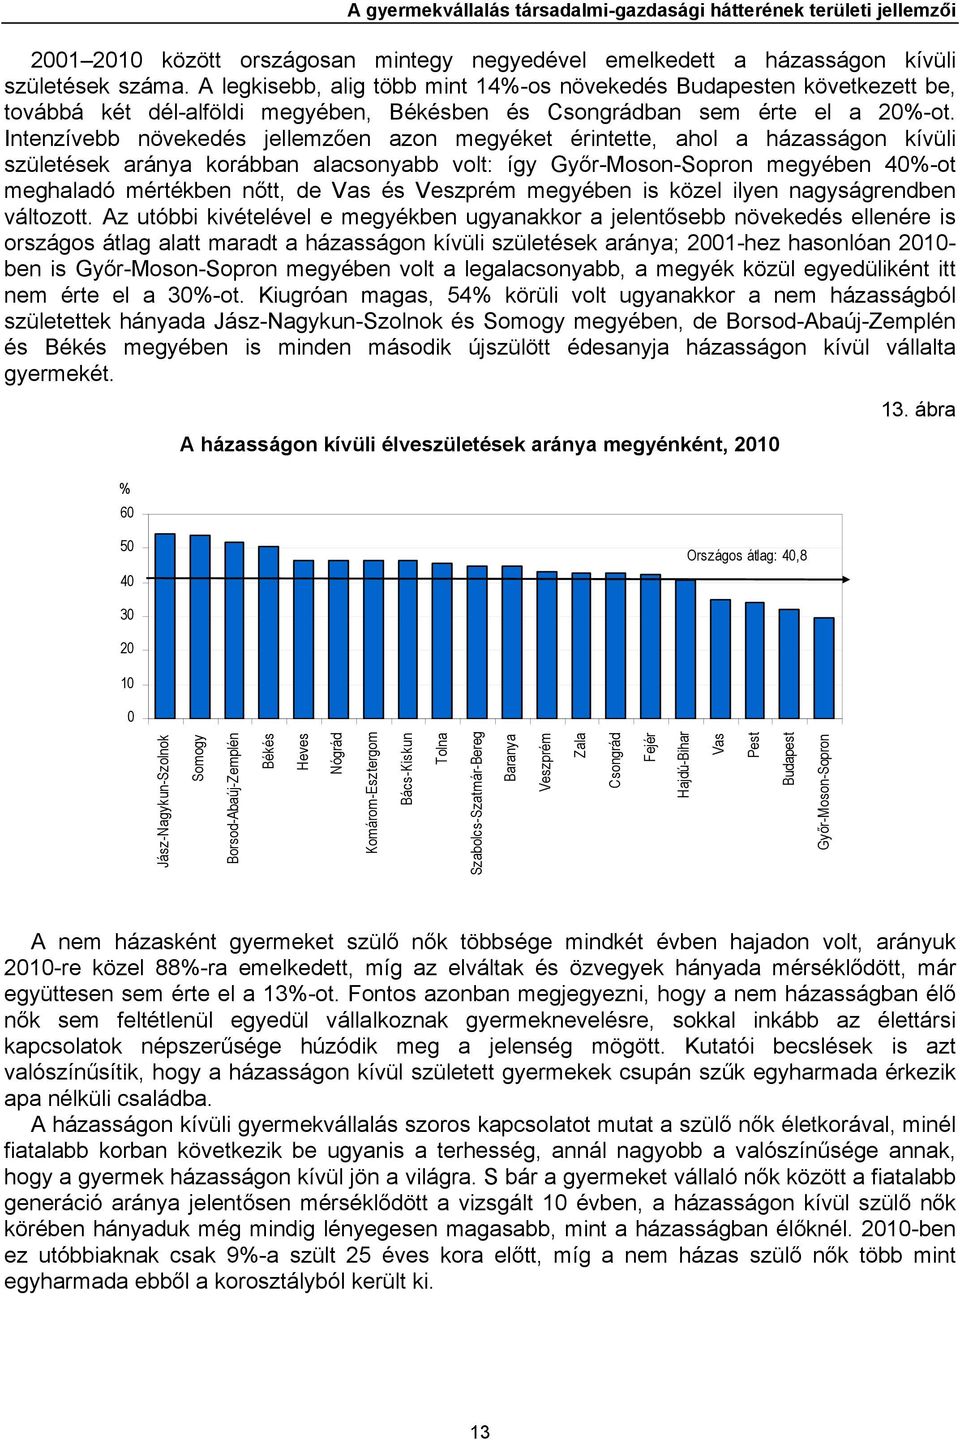 Intenzívebb növekedés jellemzően azon megyéket érintette, ahol a házasságon kívüli születések aránya korábban alacsonyabb volt: így Győr-Moson-Sopron megyében 40%-ot meghaladó mértékben nőtt, de Vas